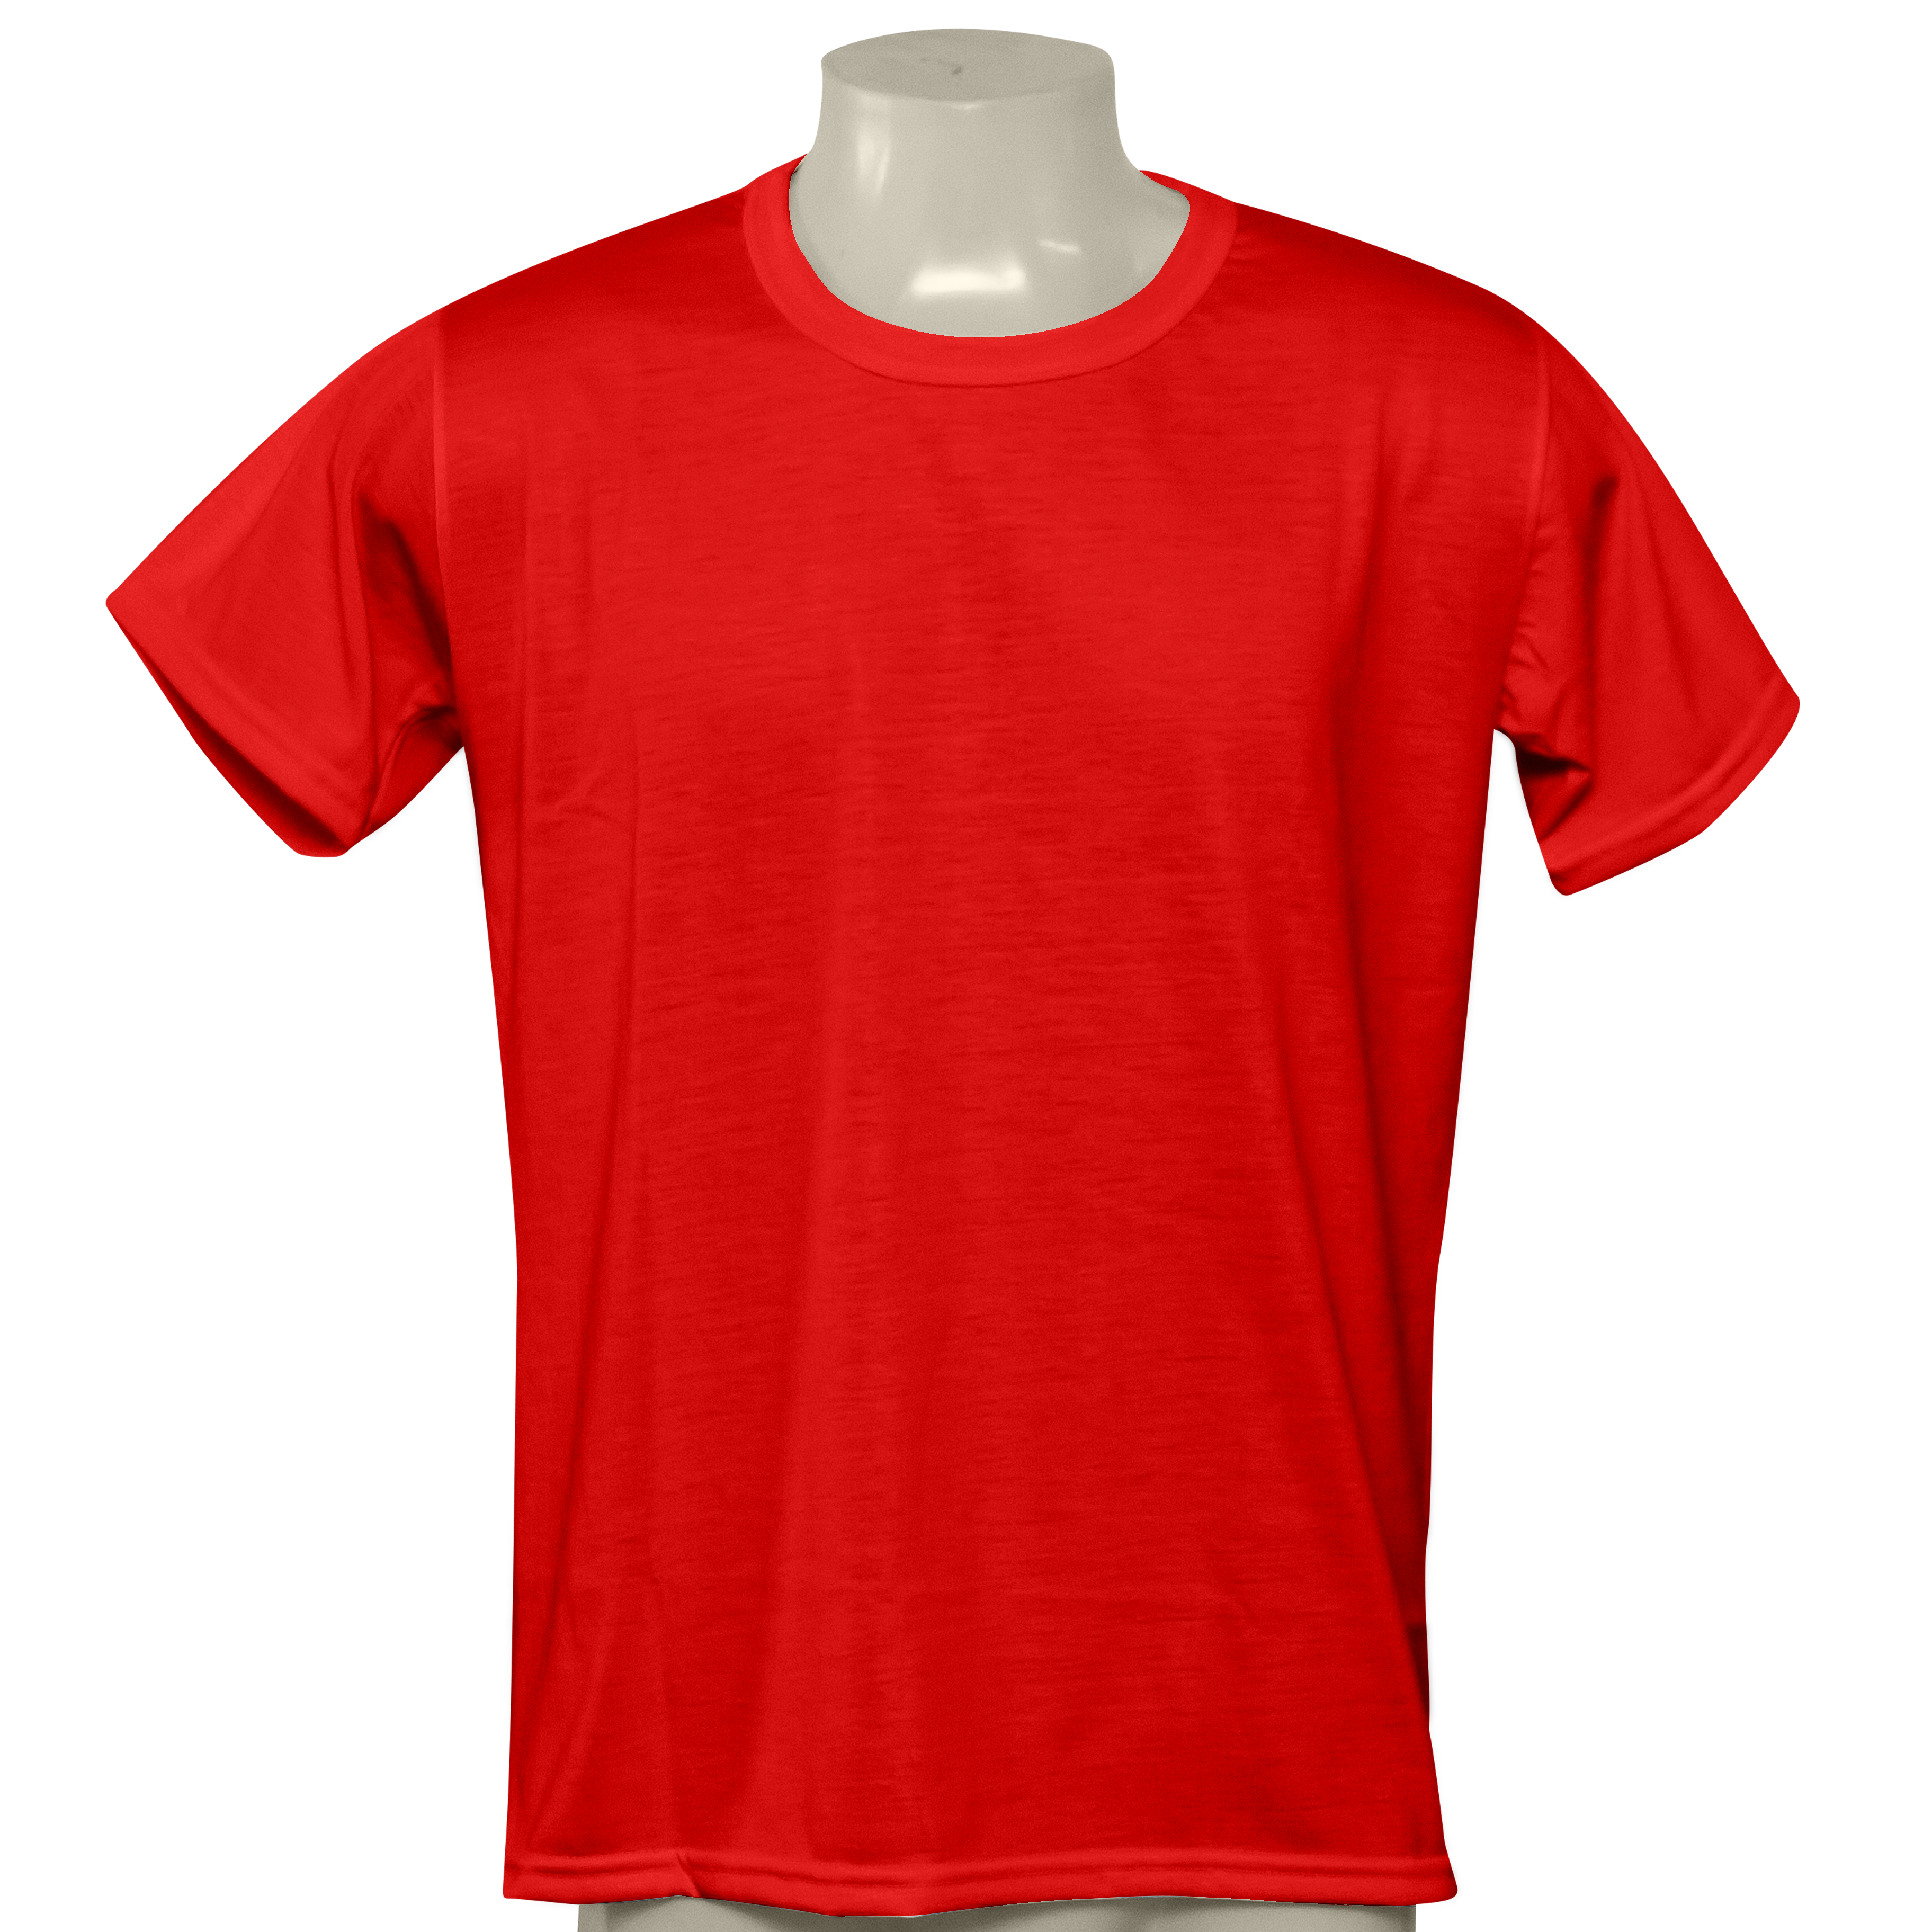 Camiseta Vermelha, Poliéster Para Sublimação